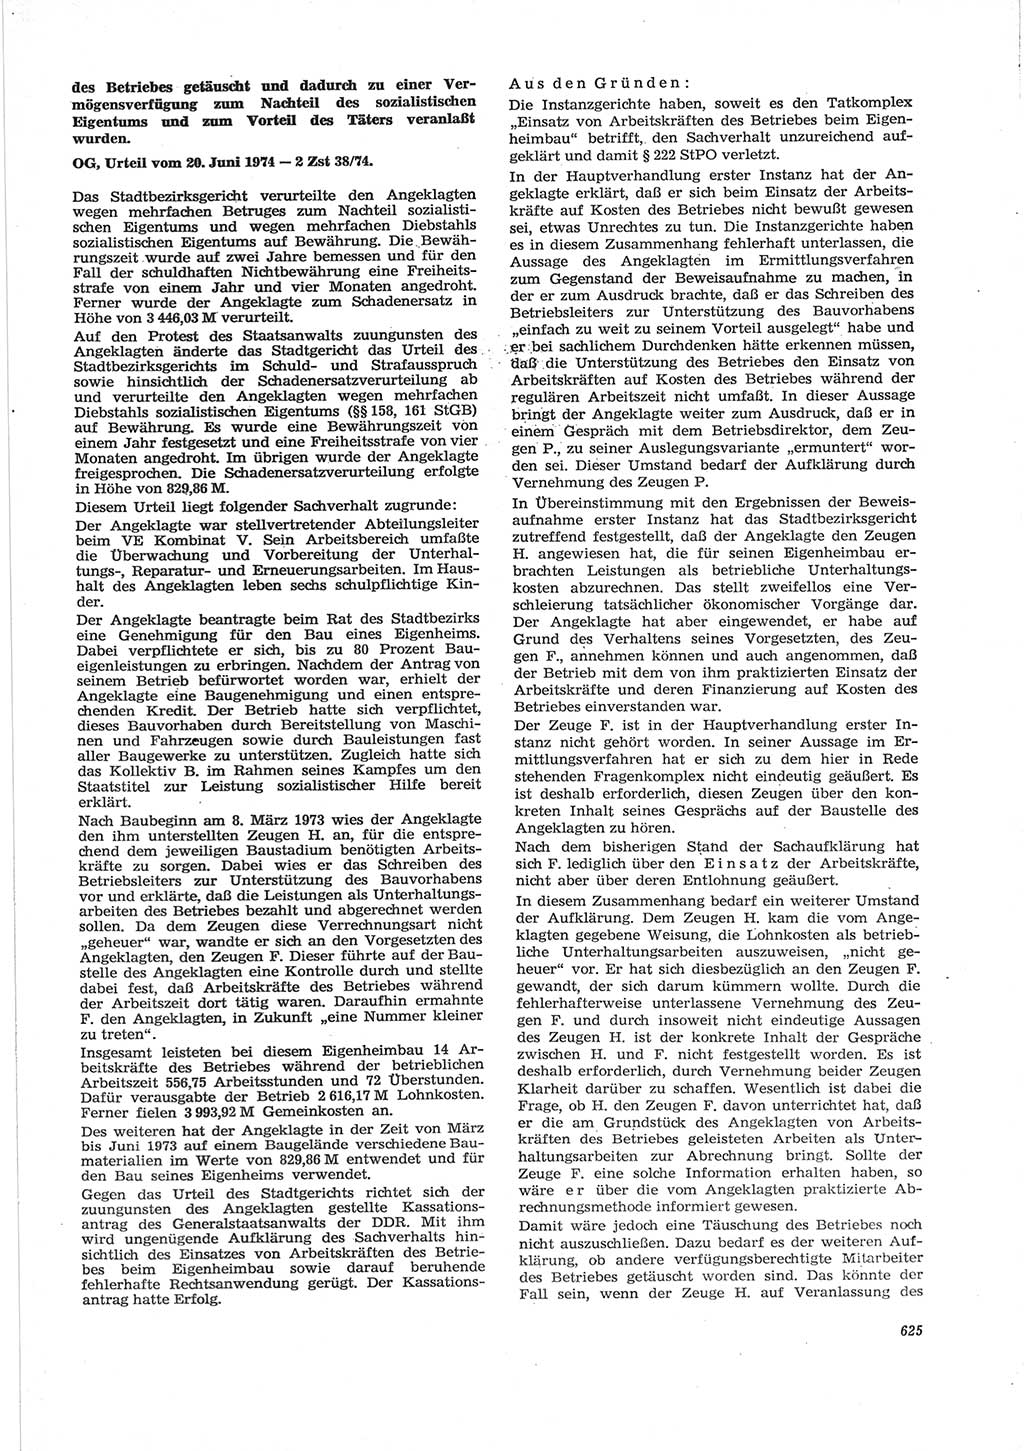 Neue Justiz (NJ), Zeitschrift für Recht und Rechtswissenschaft [Deutsche Demokratische Republik (DDR)], 28. Jahrgang 1974, Seite 625 (NJ DDR 1974, S. 625)